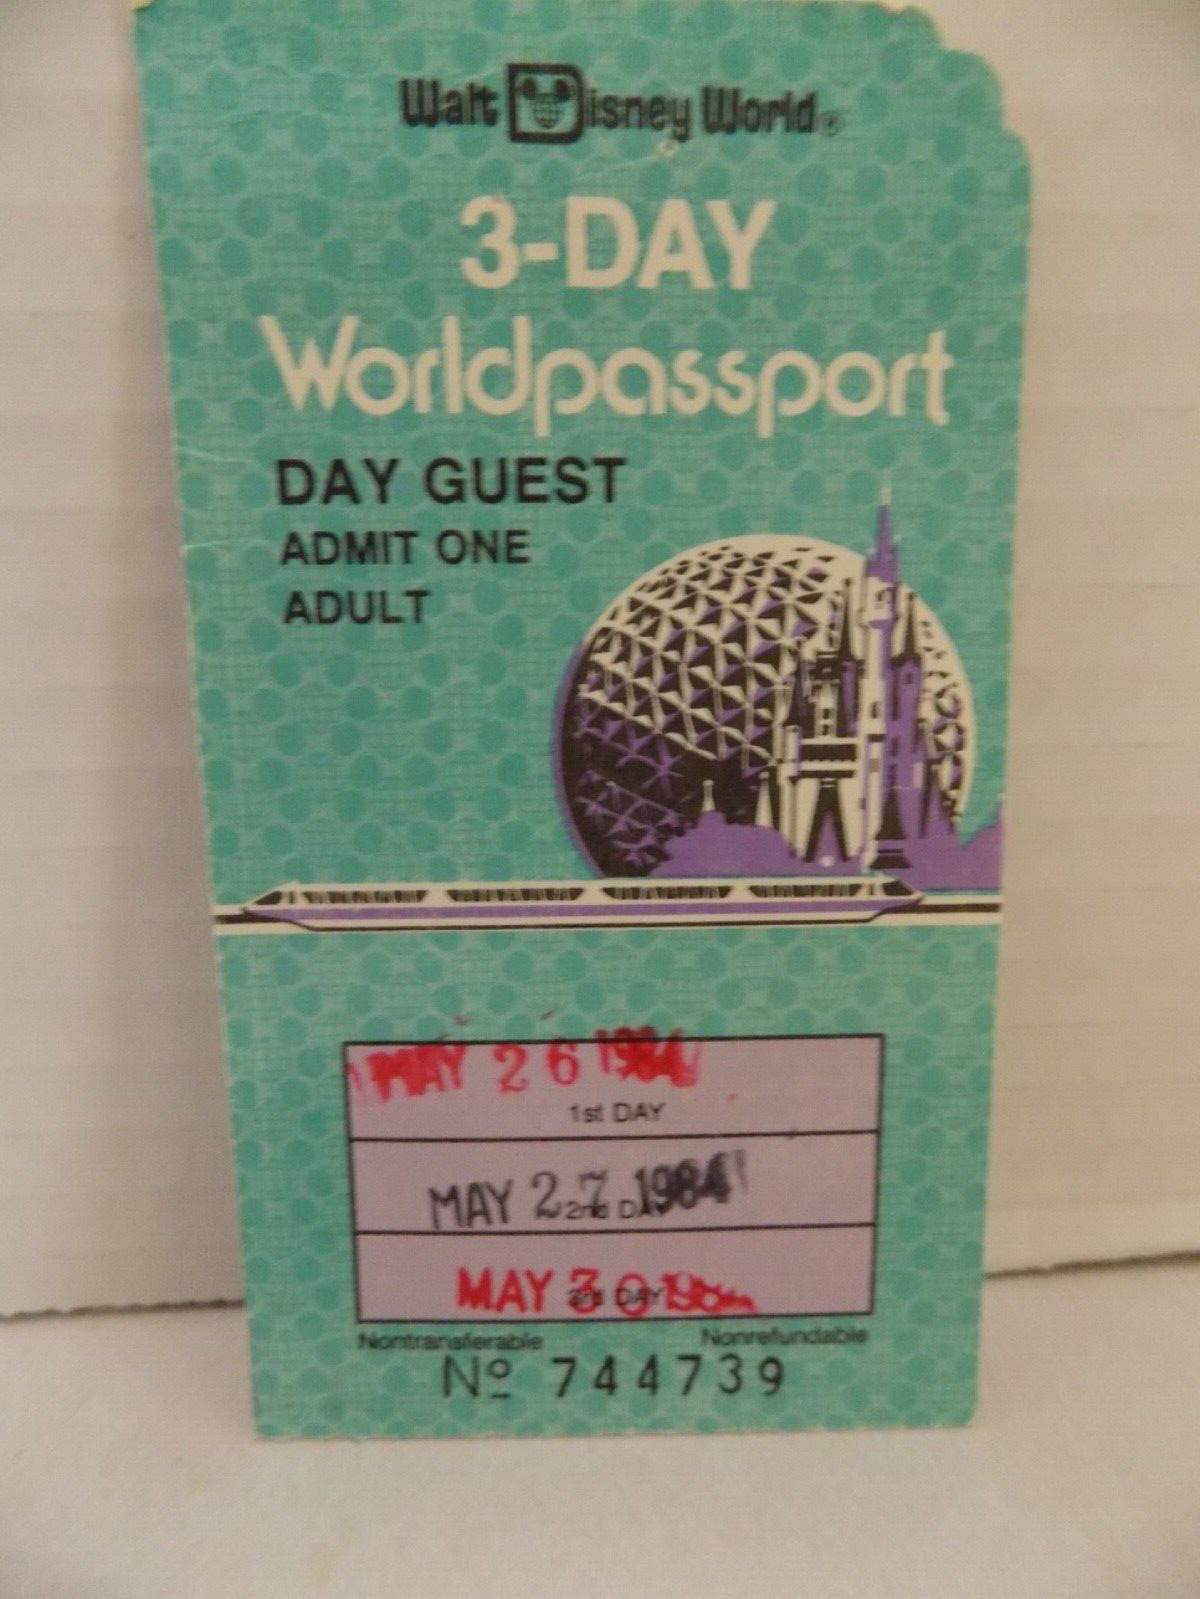 Walt Disney World 3 Day Worldpassport 1984 Day Guest Adult Ticket Stub